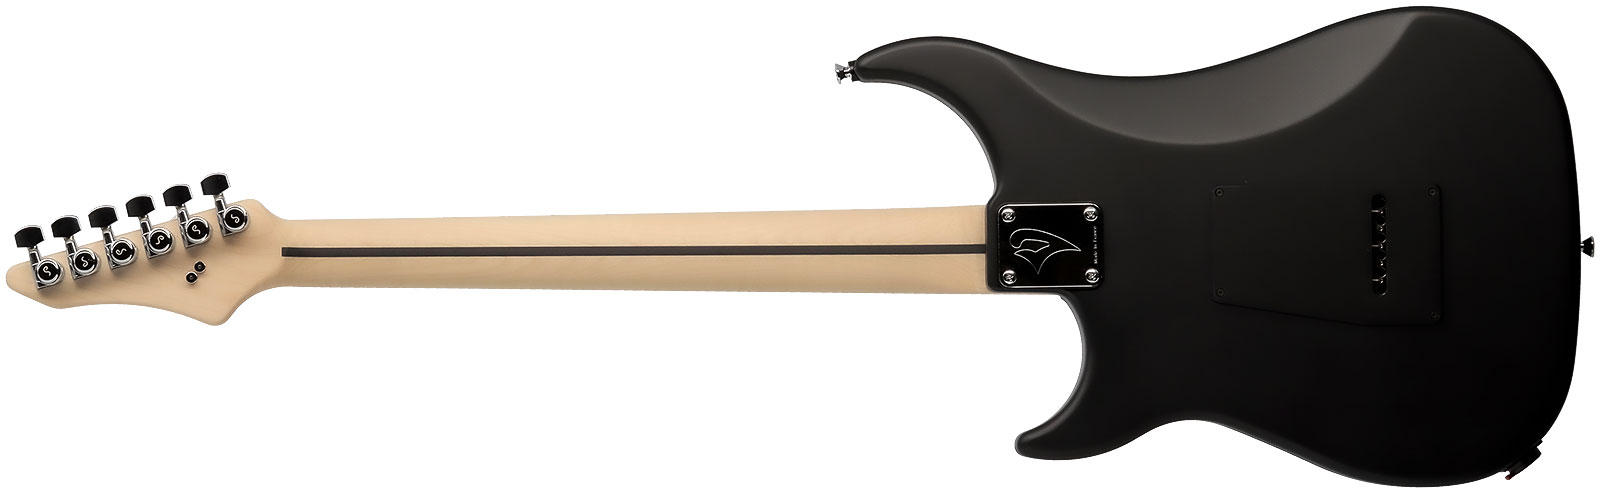 Vigier Excalibur Indus 2h Trem Rw - Black Matte - Guitare Électrique Double Cut - Variation 1